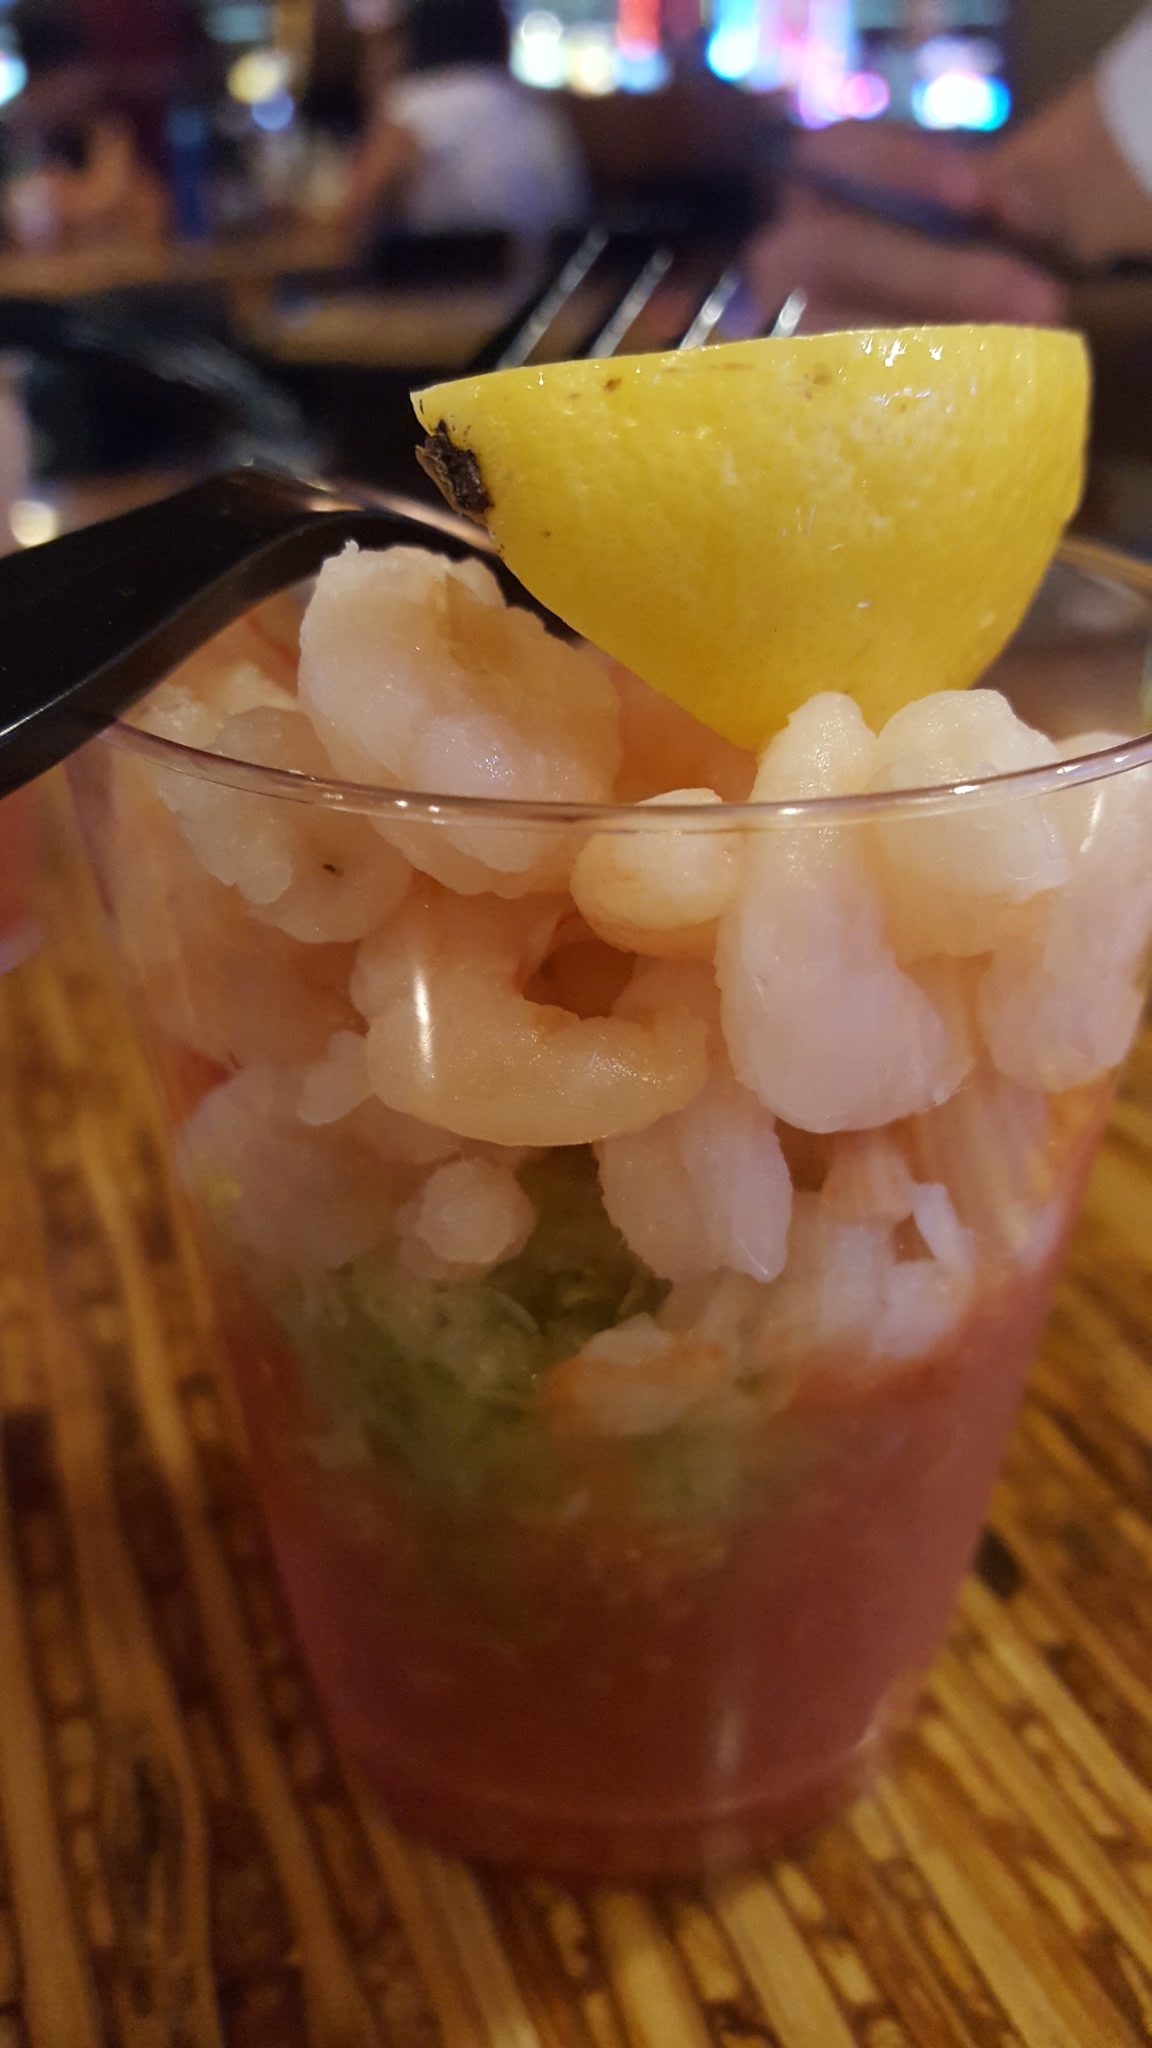 99 cent shrimp cocktail las vegas